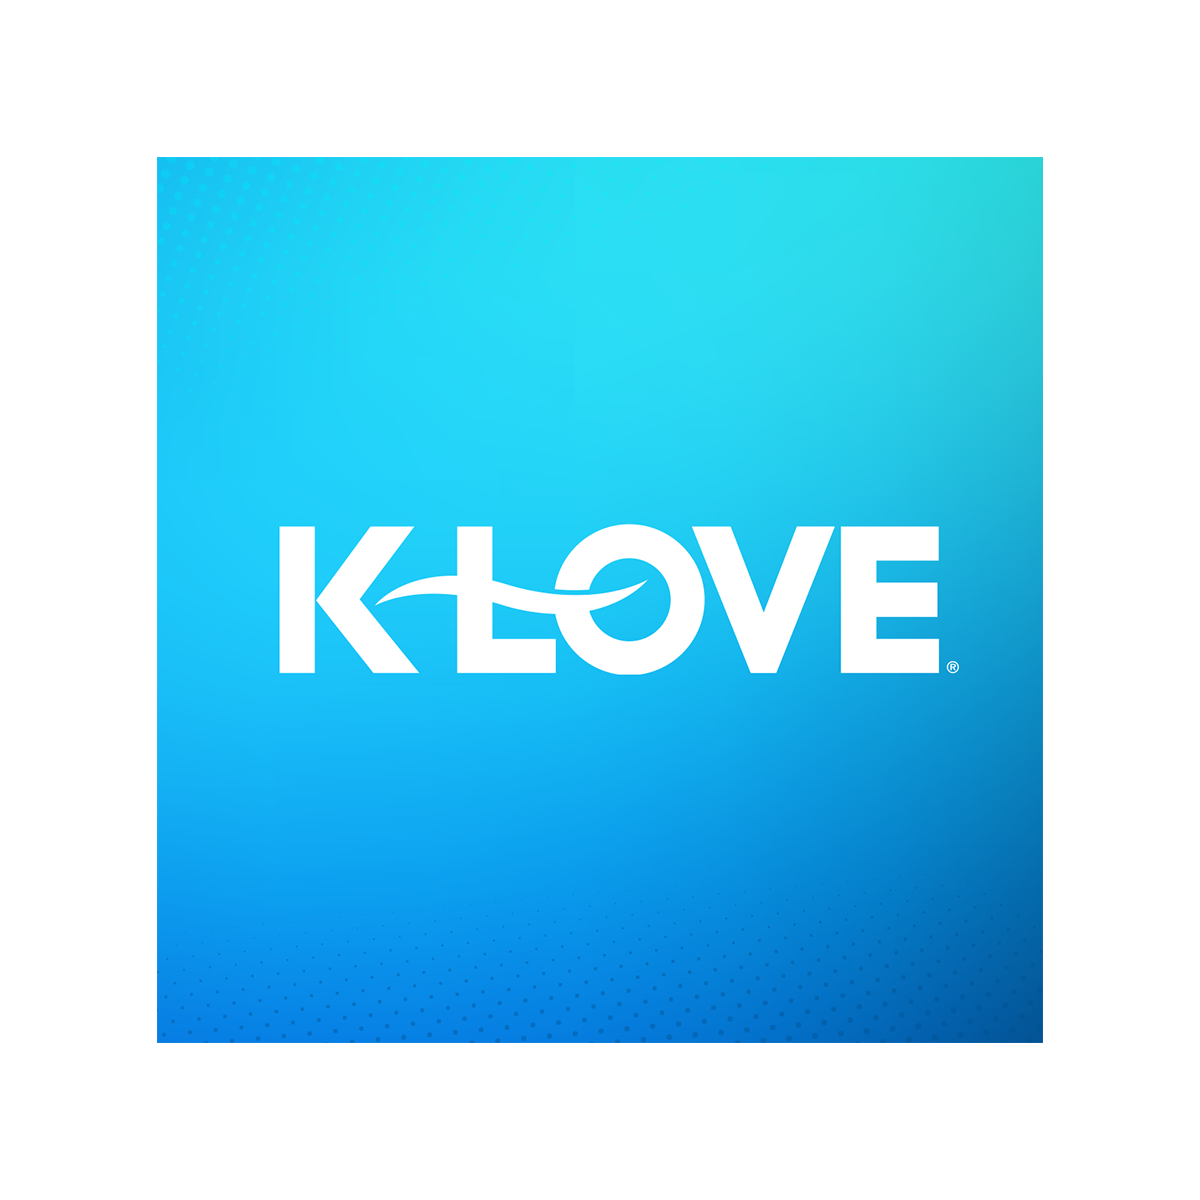 Listen to KLOVE Live Positive, Encouraging KLOVE iHeartRadio